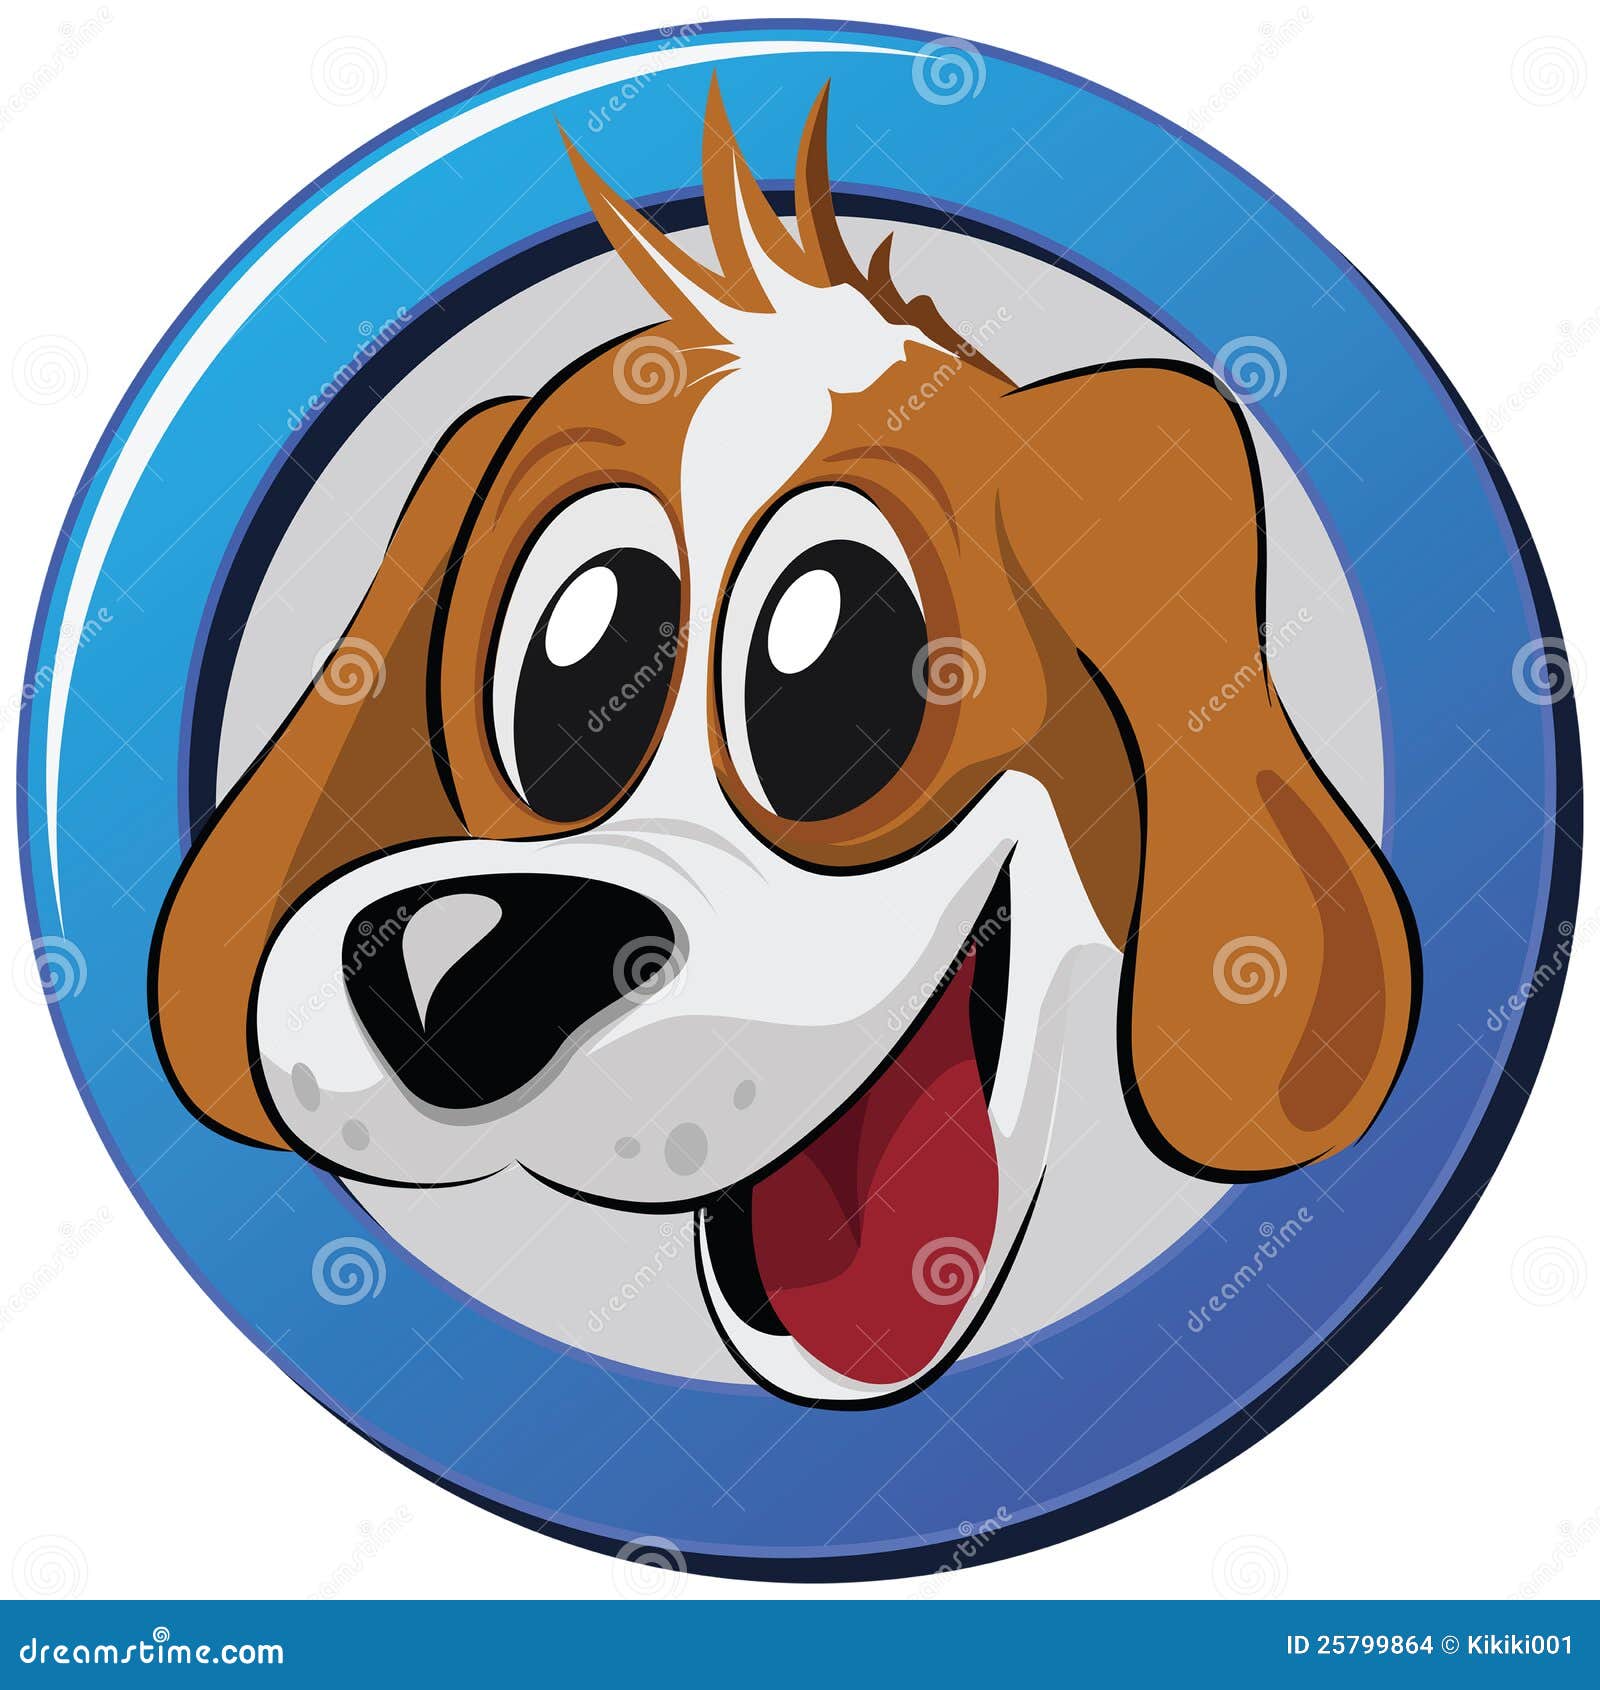 Сценка собаки. Щенок мультяшный. Мордочка собаки в круге. Собака мультяшная. Логотип с изображением собаки.